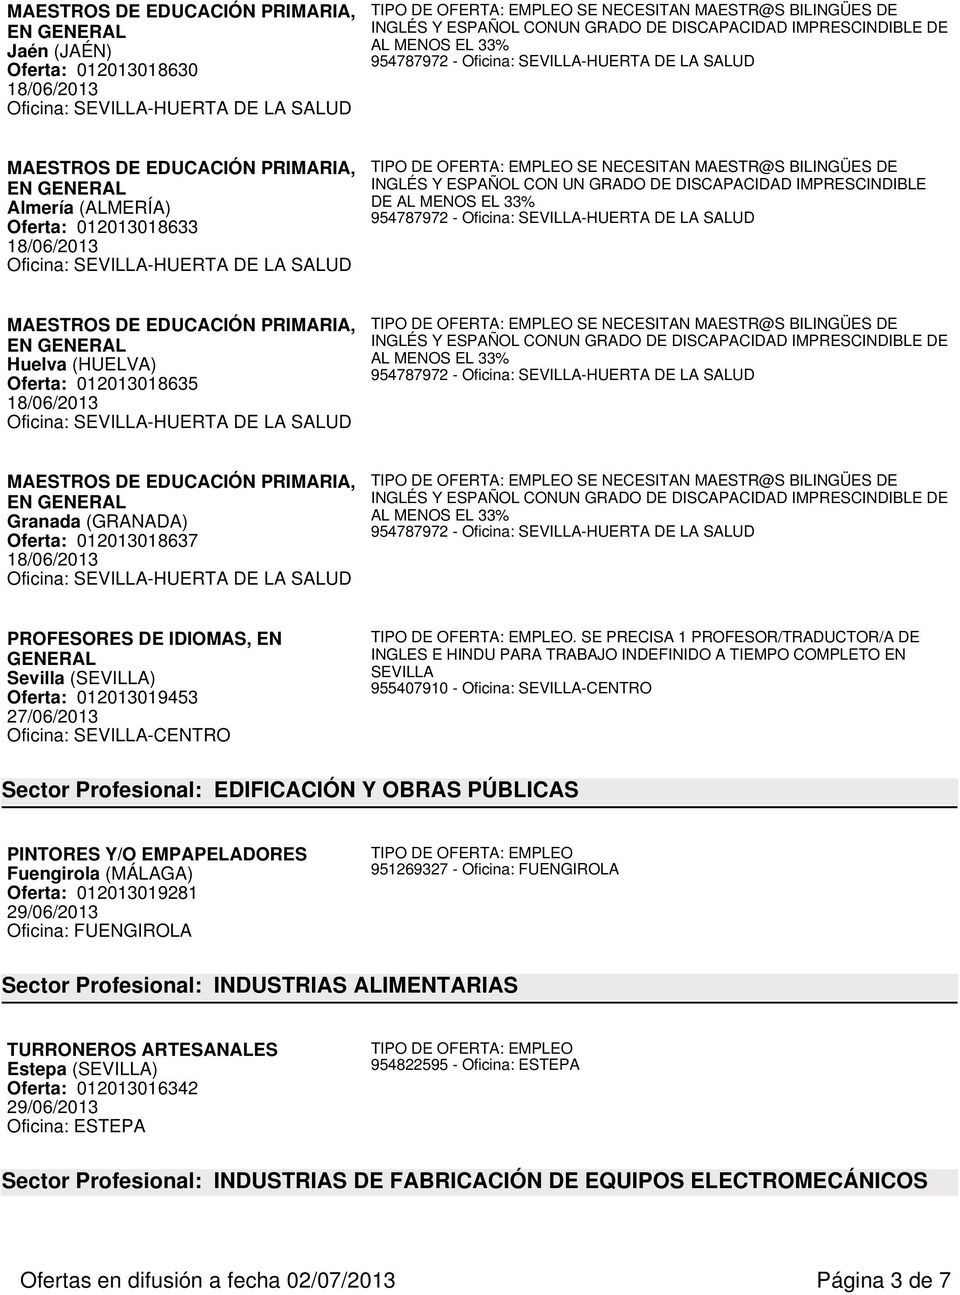 Oferta: 012013019453 27/06/2013 Oficina: SEVILLA-CENTRO.